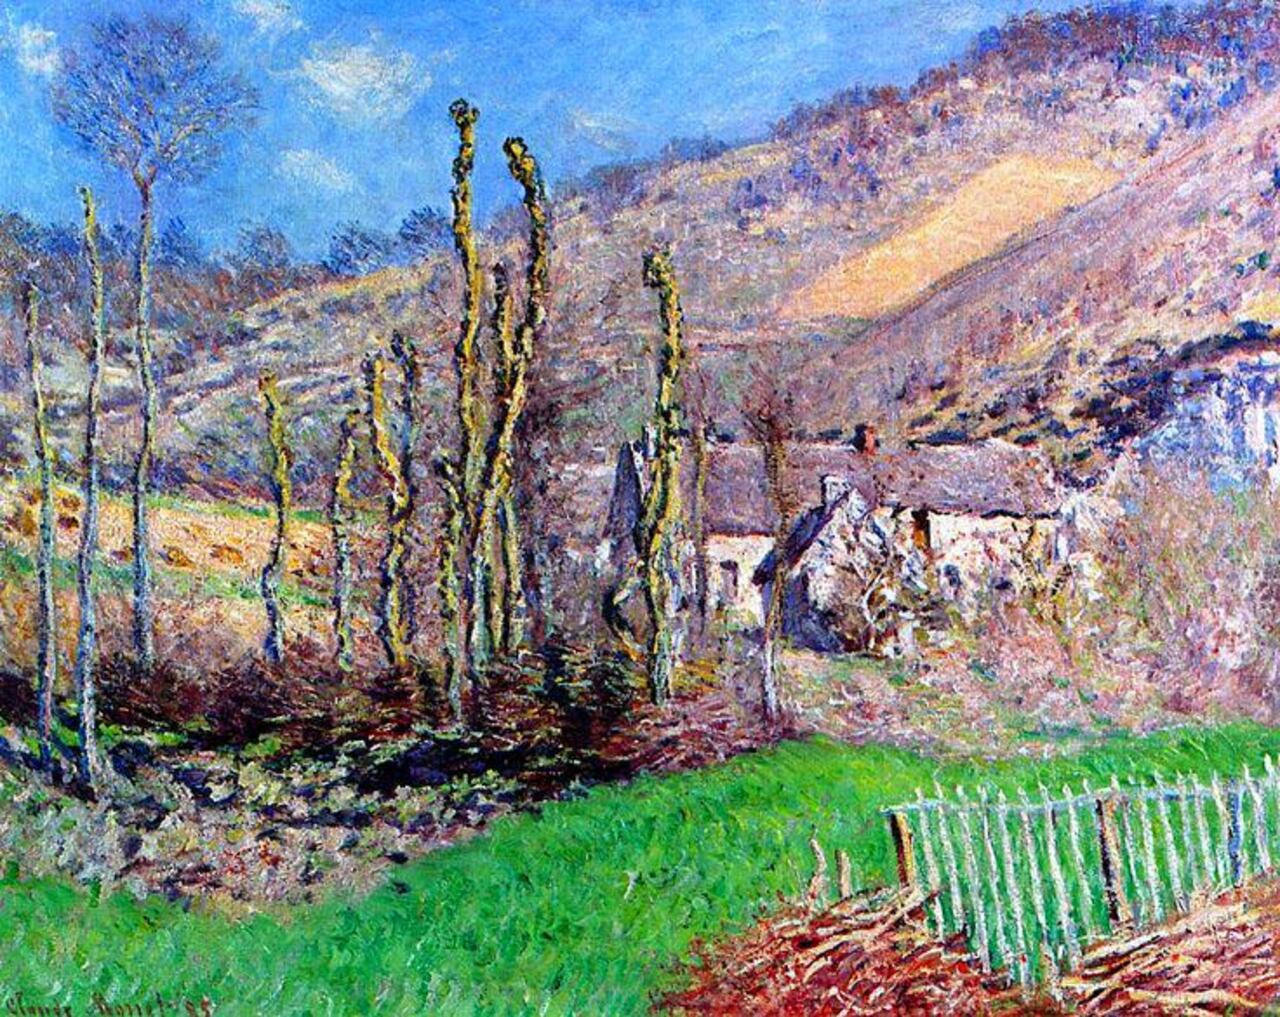 Claude Monet "Winter Landscape at the Val de Falaise " (1885) http://mf.tt/AdXHP @googleexpertuk #Monet #art http://t.co/dLkDGDj88N